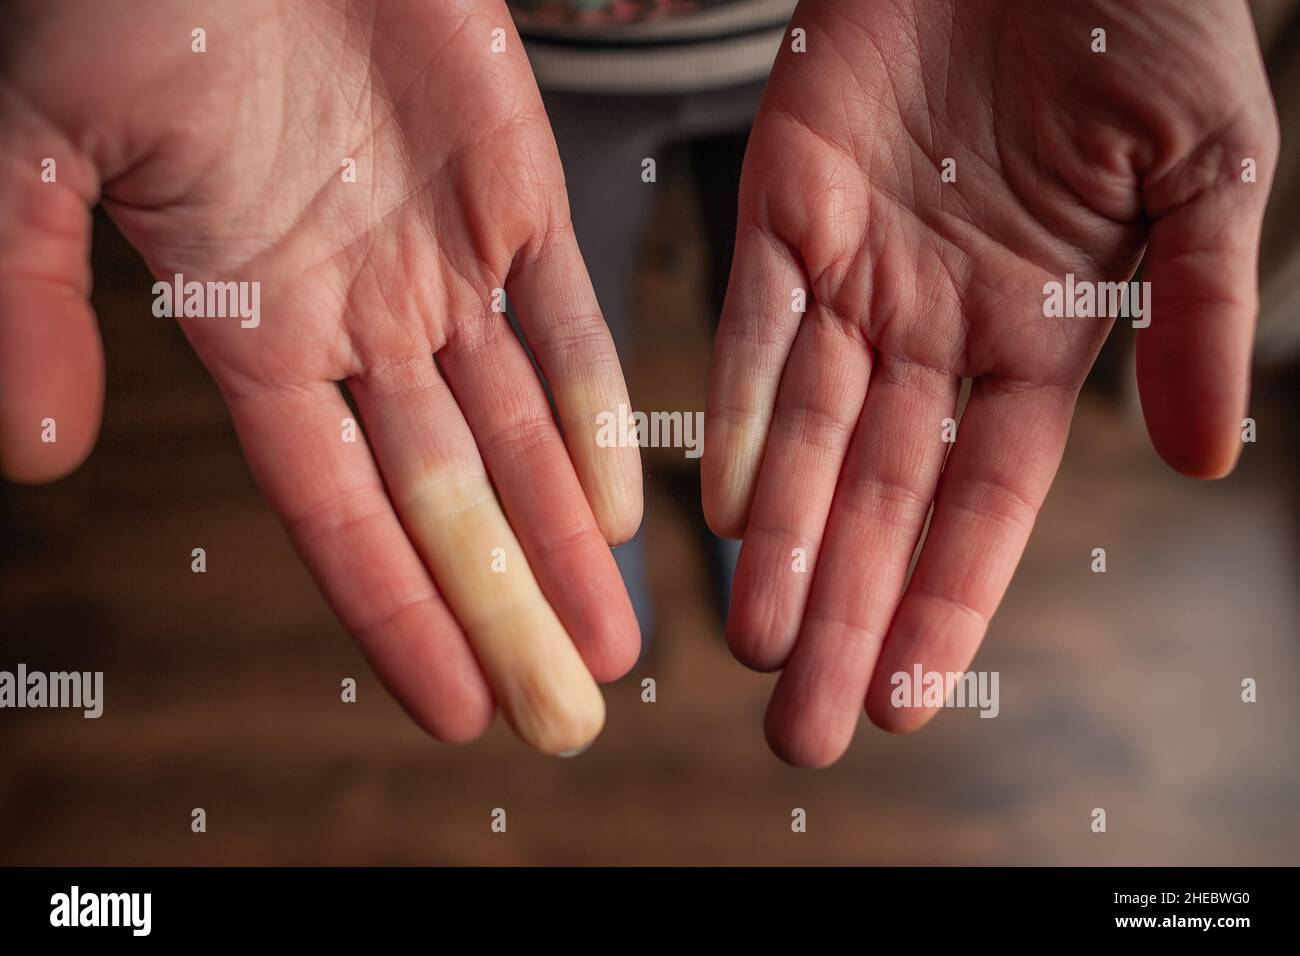 Hände einer Person mit Raynaud-Phänomen während eines Angriffs mit einigen weißen Fingern, Farbänderung Raynaud-Syndrom Raynaud-Syndrom Stockfoto